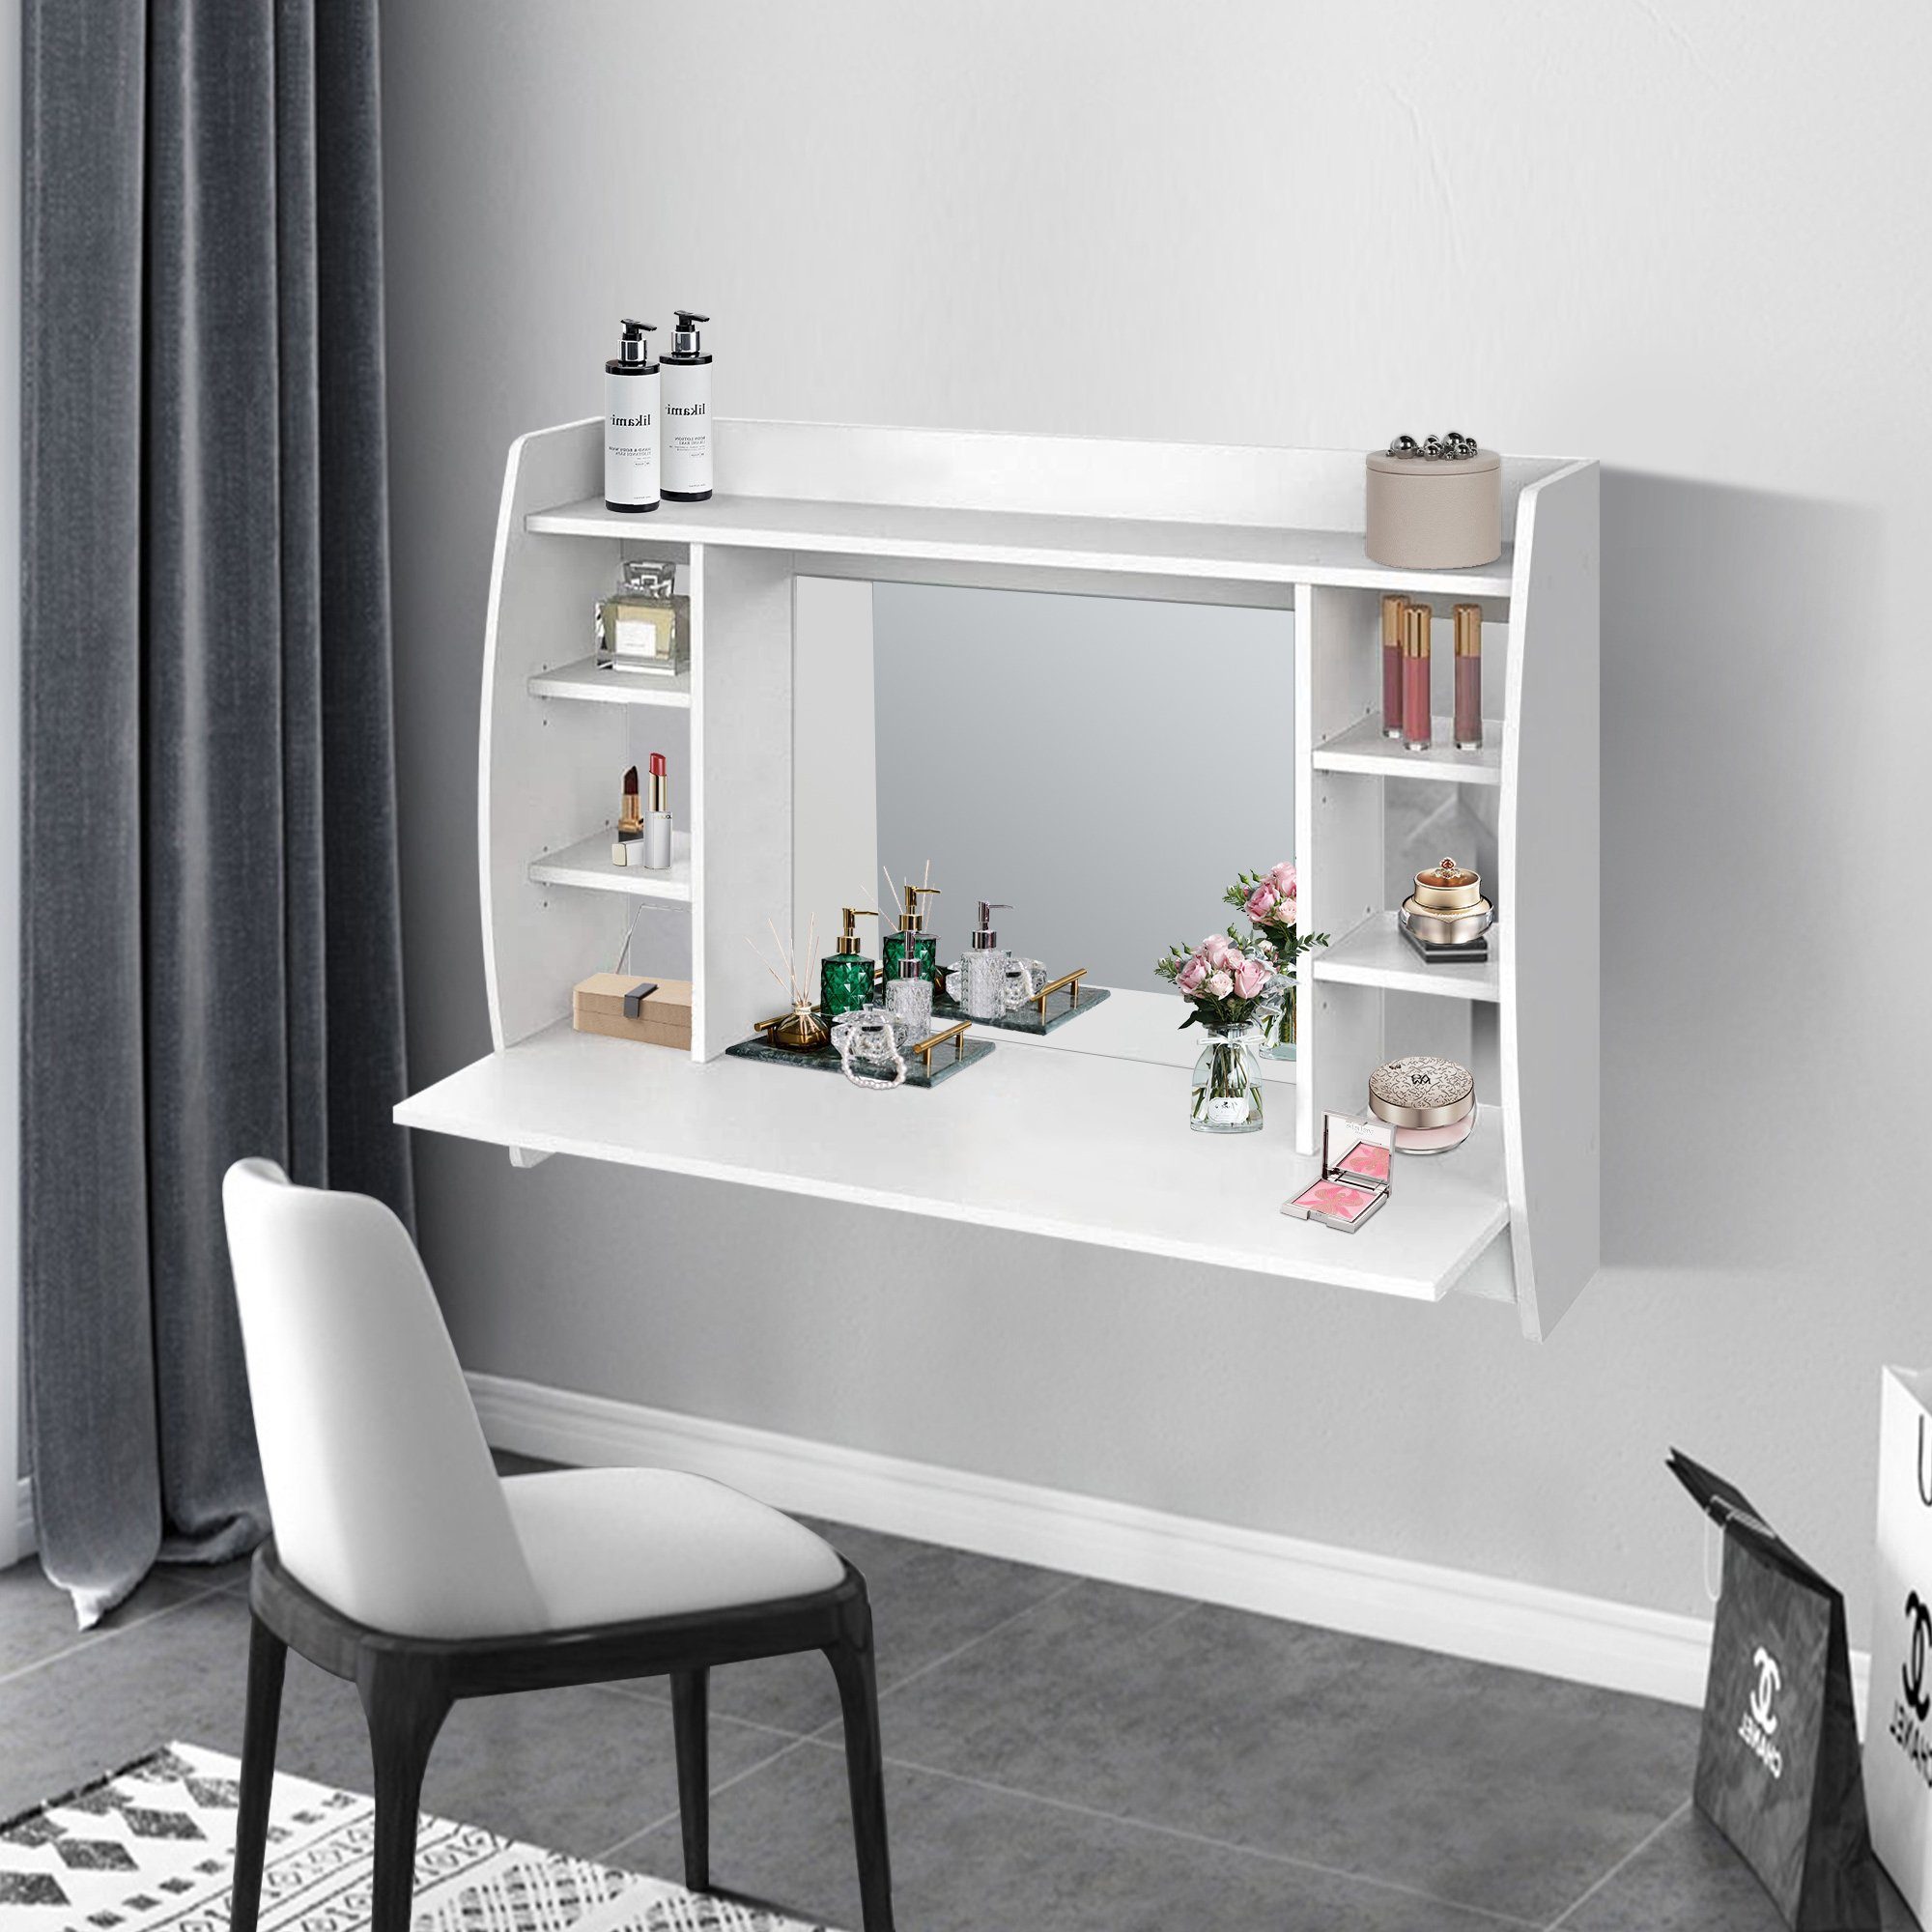 ML-DESIGN Schminktisch Wandschminktisch mit Spiegel, weiß, 110x74x48,5 cm,  Ein stilsicheren Möbelstück, das jeden Raum aufwertet